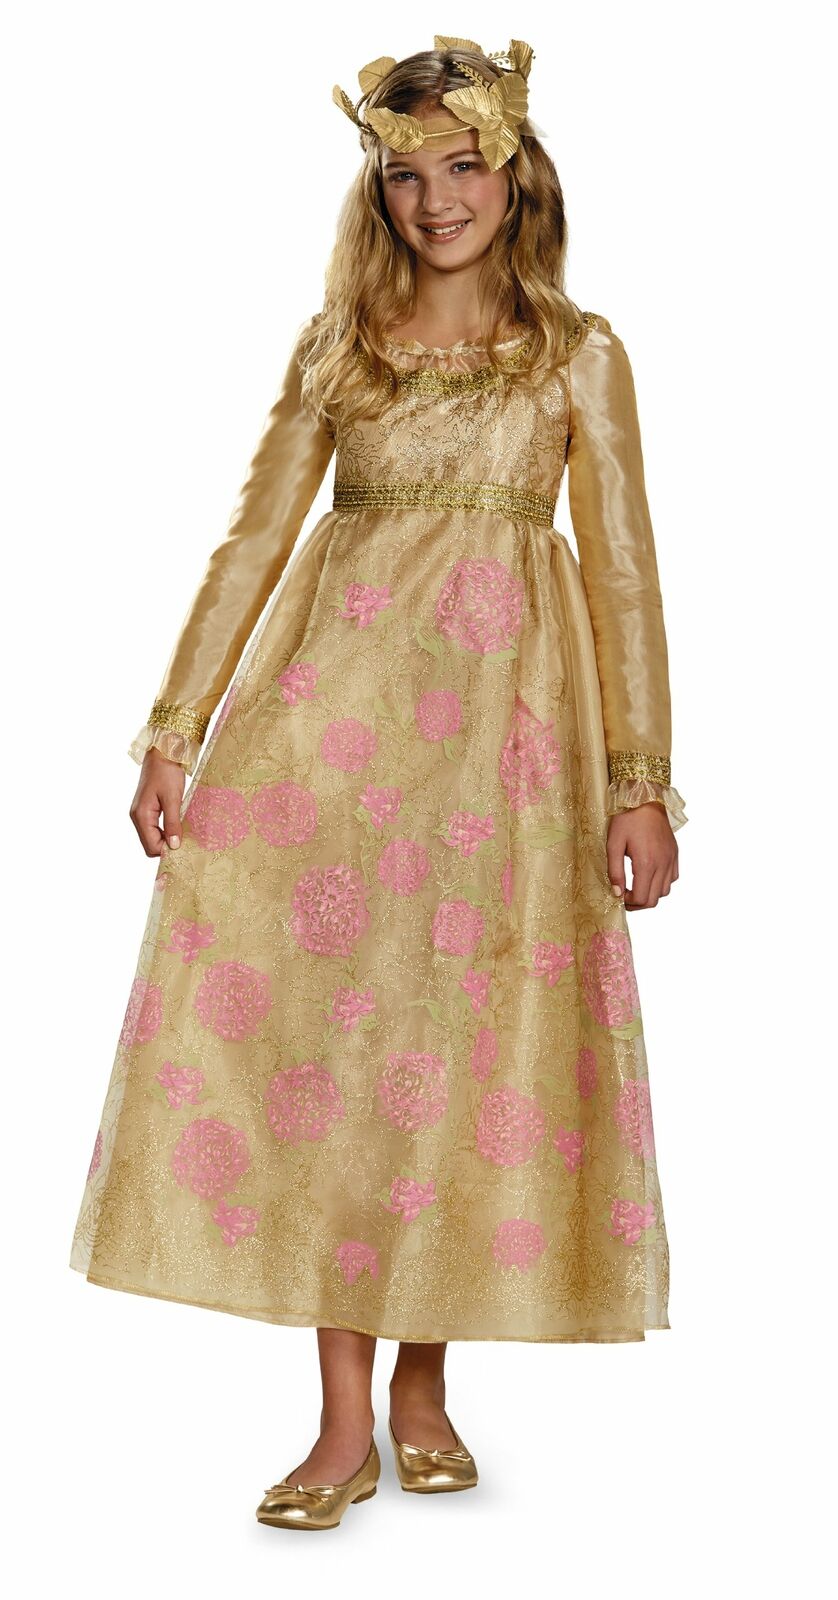 Aurora Hochzeitskleid Maleficent Kostüme Halloween Cosplay Kleid für Kinder